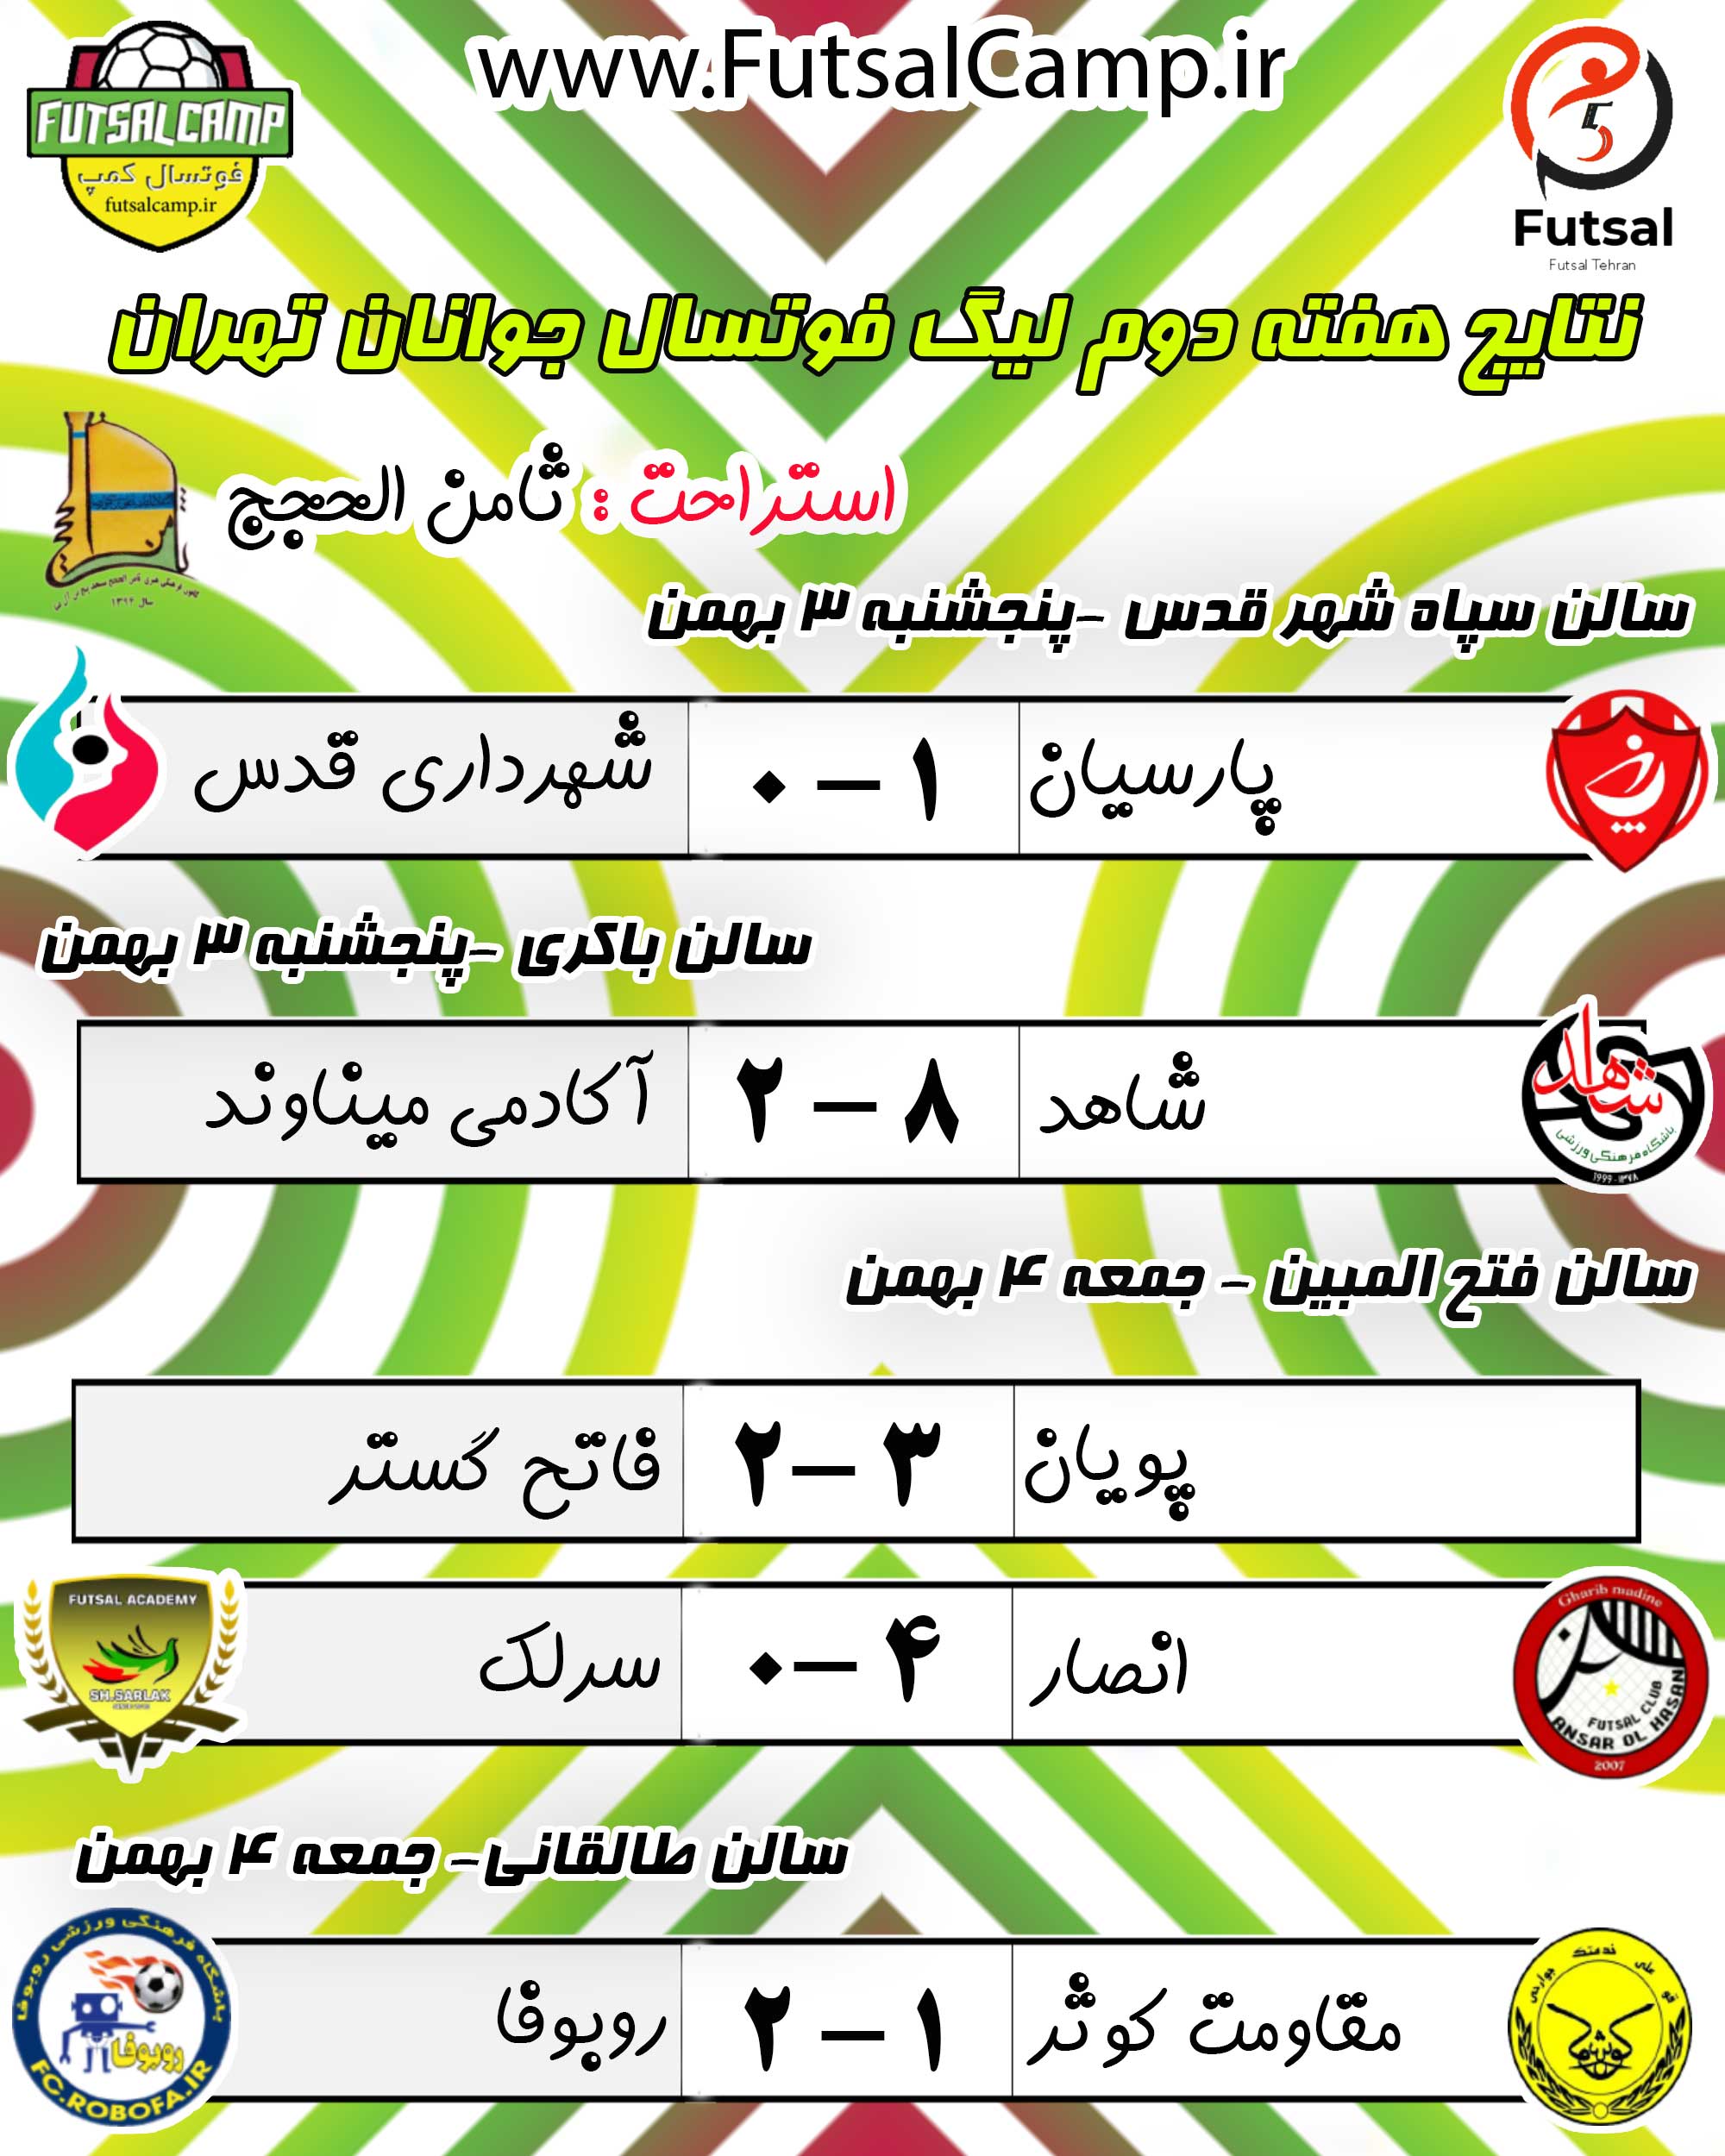 نتایج بازی های هفته دوم لیگ فوتسال جوانان تهران